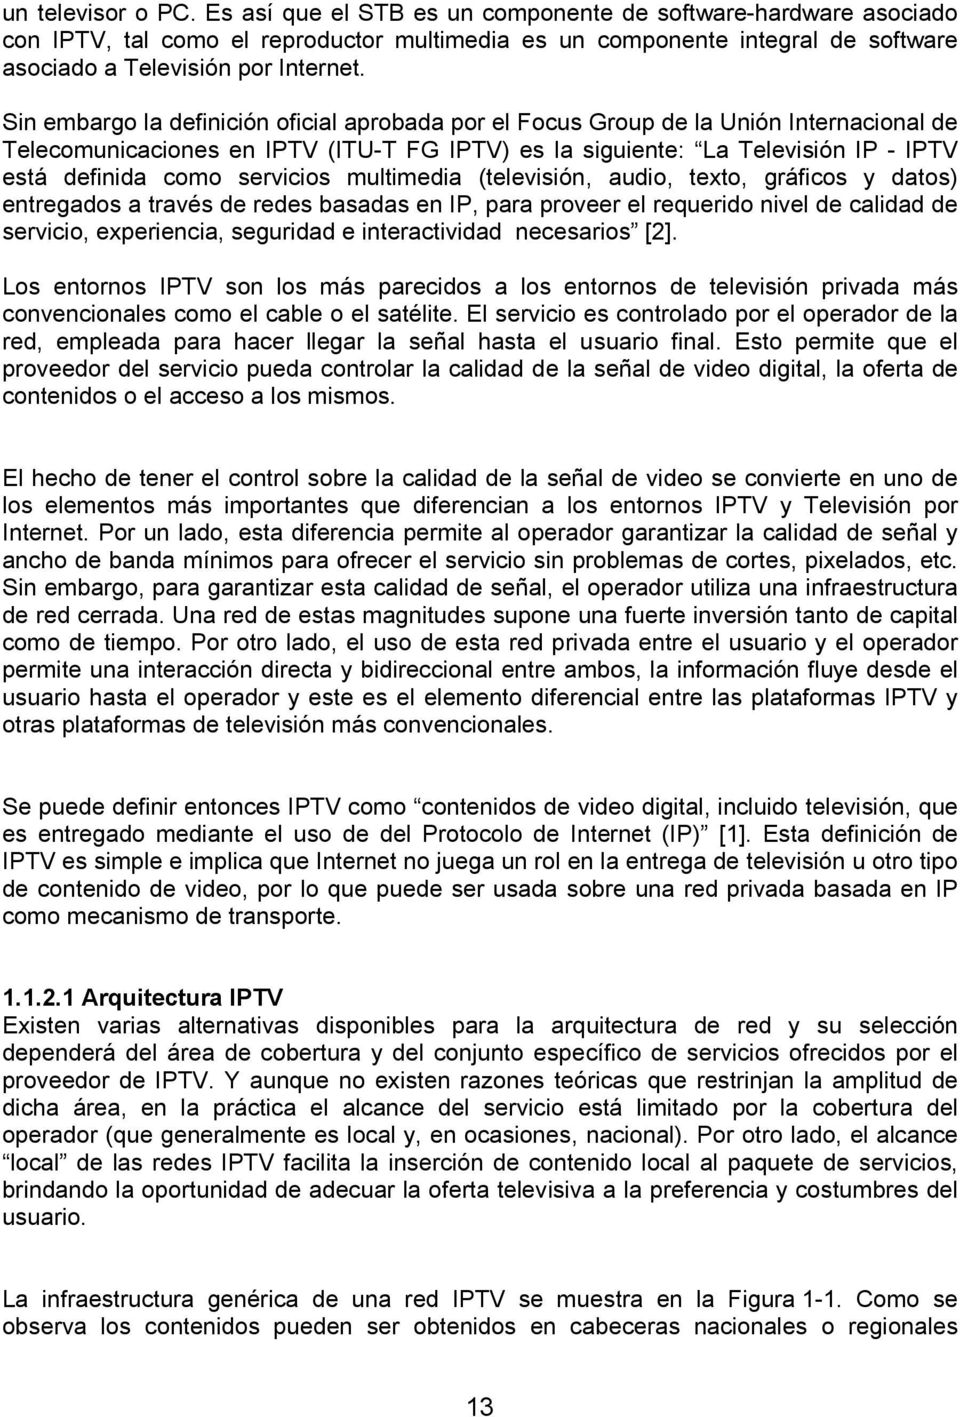 Sin embargo la definición oficial aprobada por el Focus Group de la Unión Internacional de Telecomunicaciones en IPTV (ITU-T FG IPTV) es la siguiente: La Televisión IP - IPTV está definida como